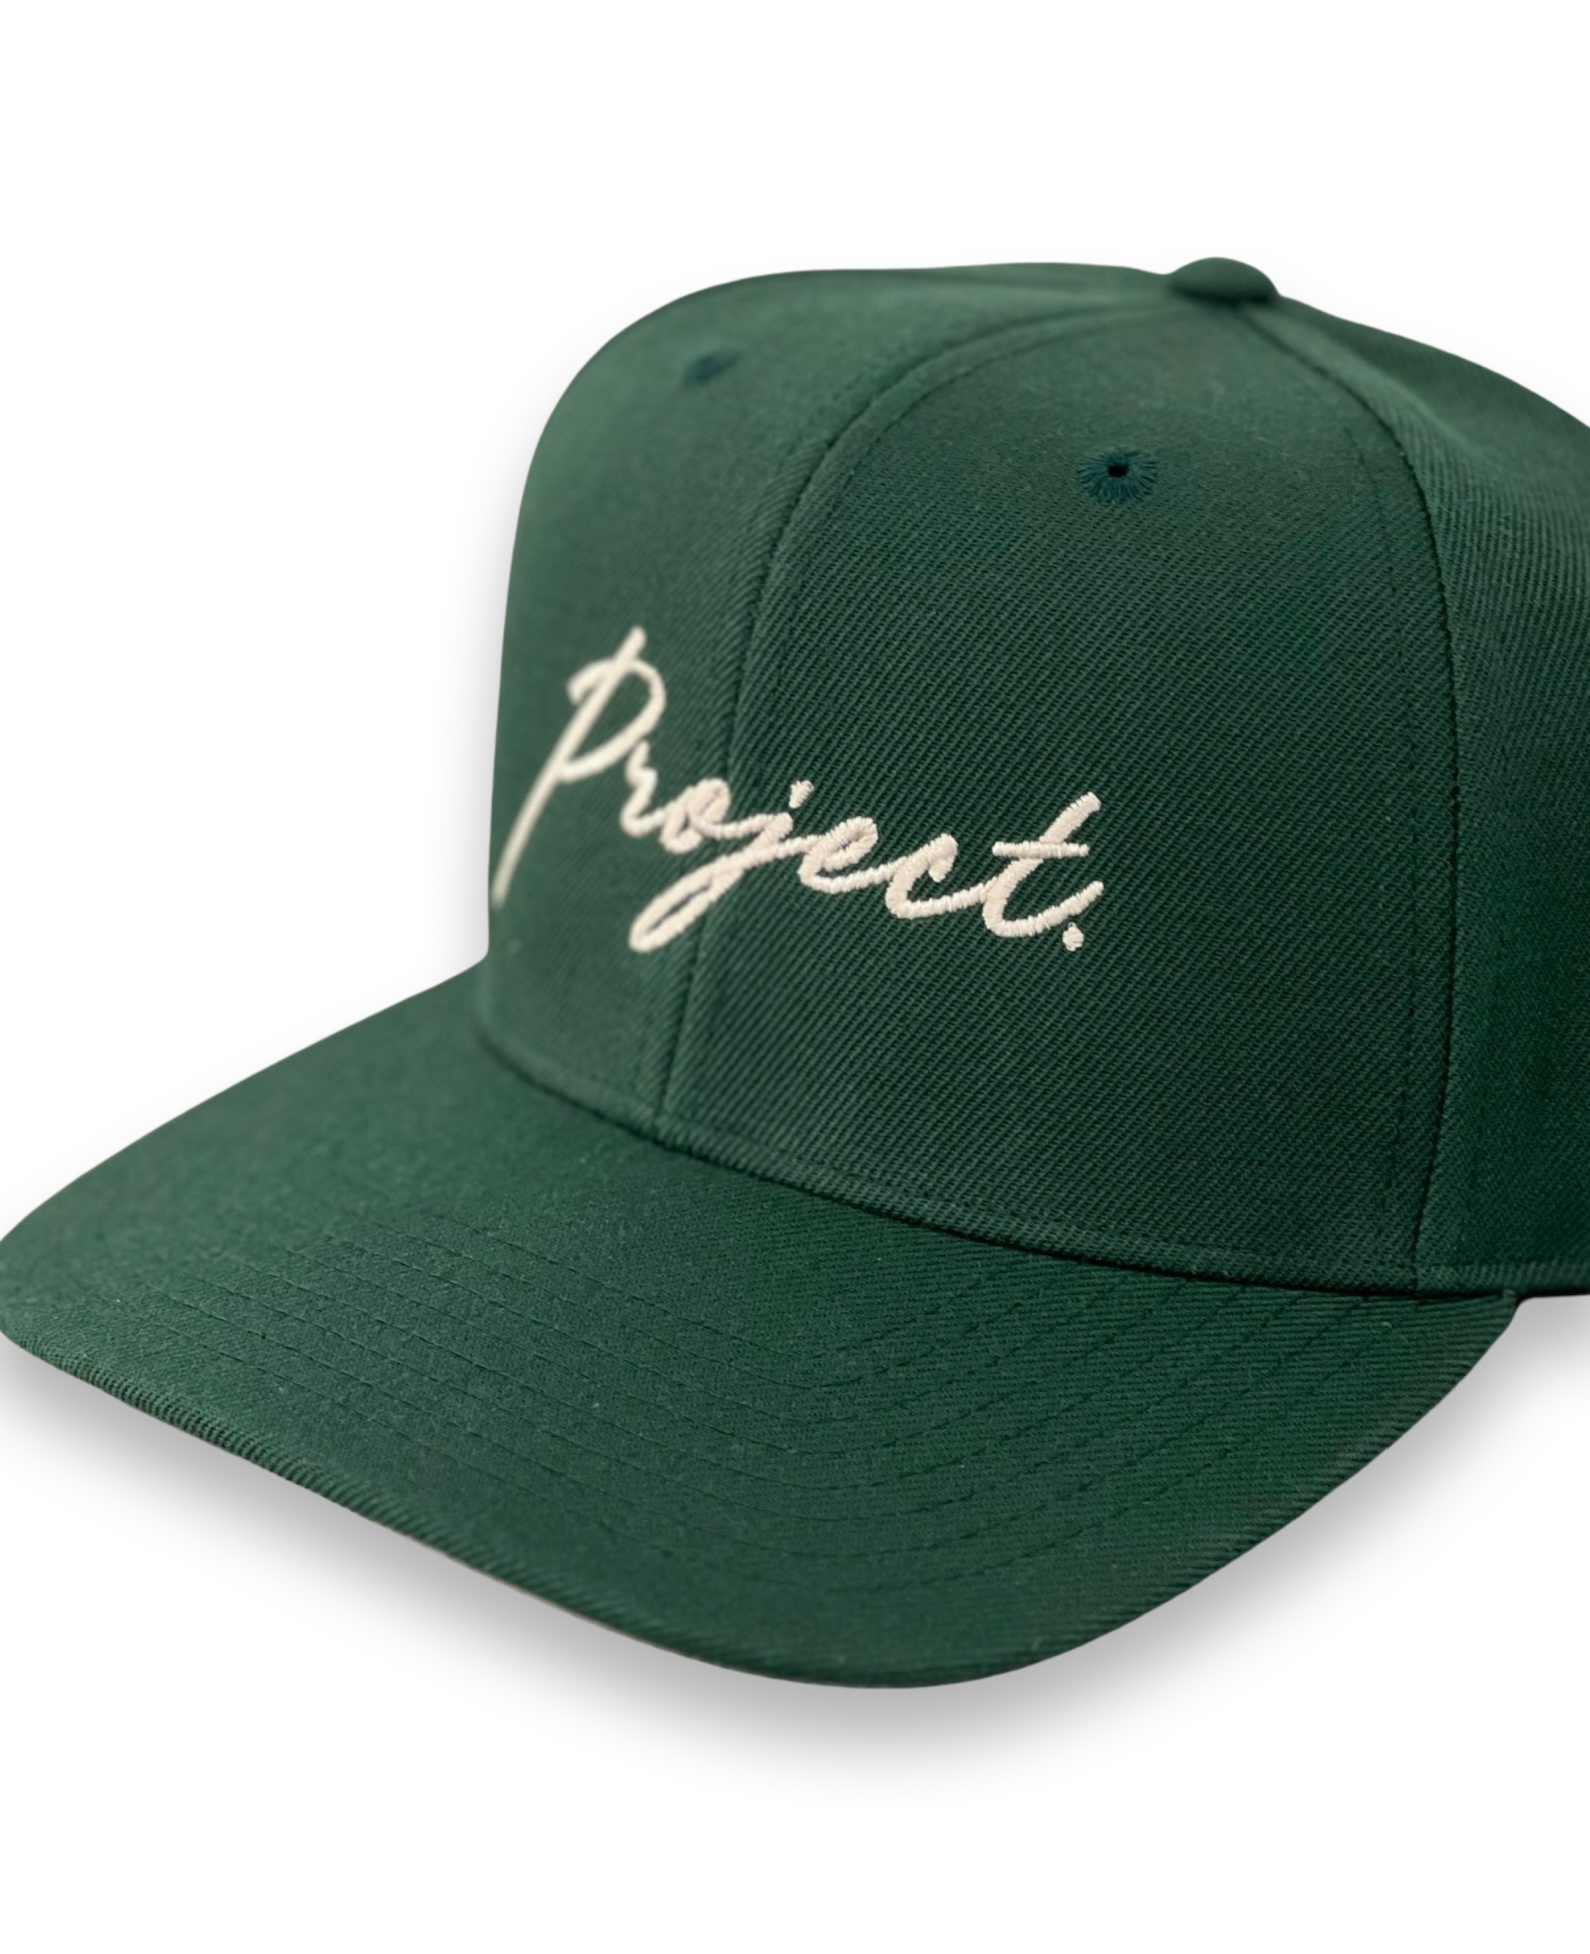 Script Snapback Cap (Green)